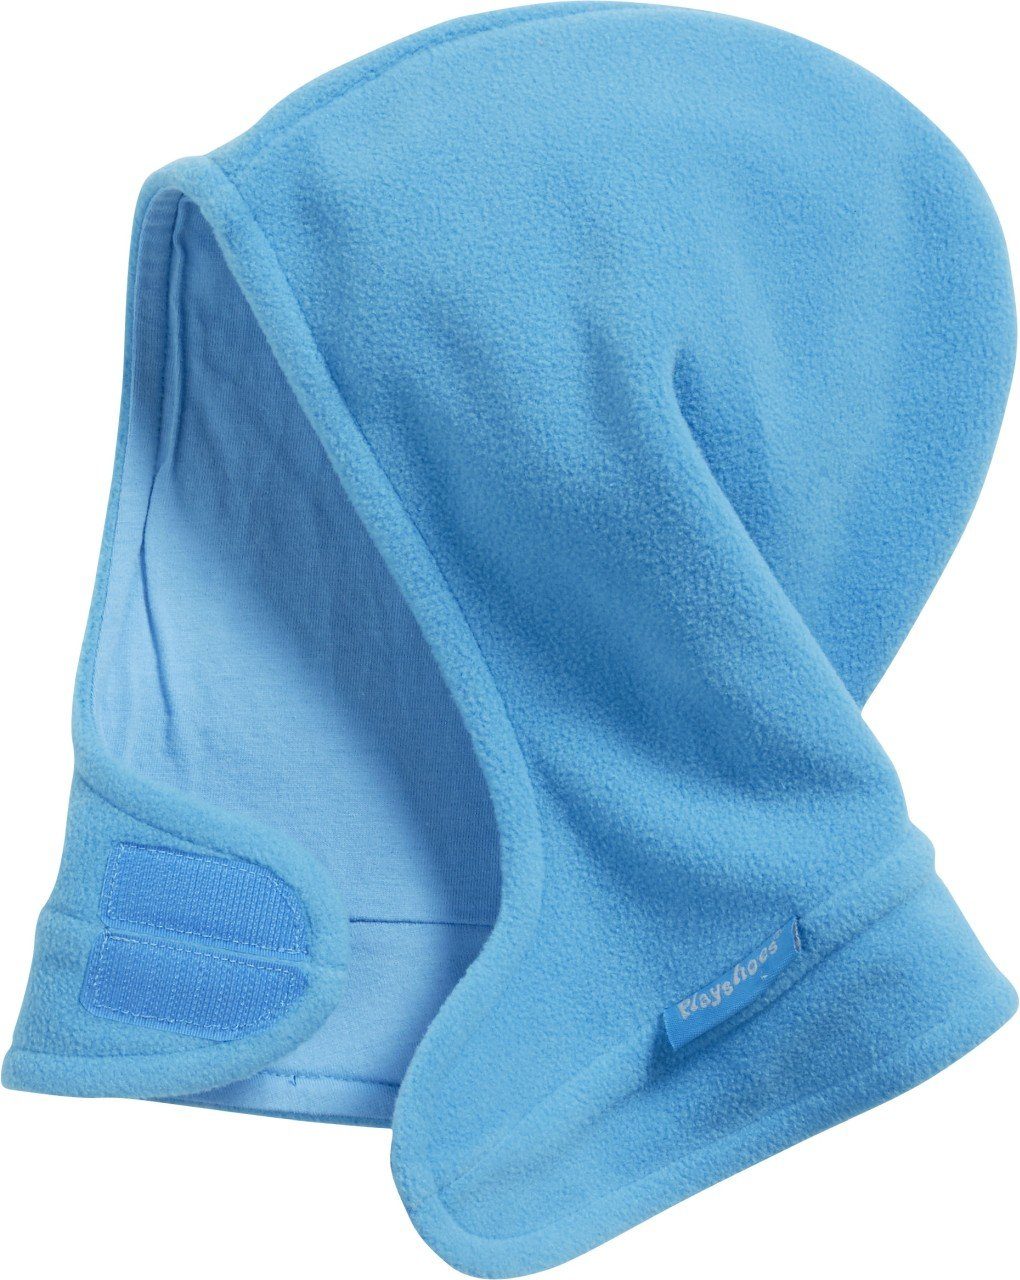 aquablau Fleece-Schalmütze mit Playshoes Klettverschluß Schlupfmütze